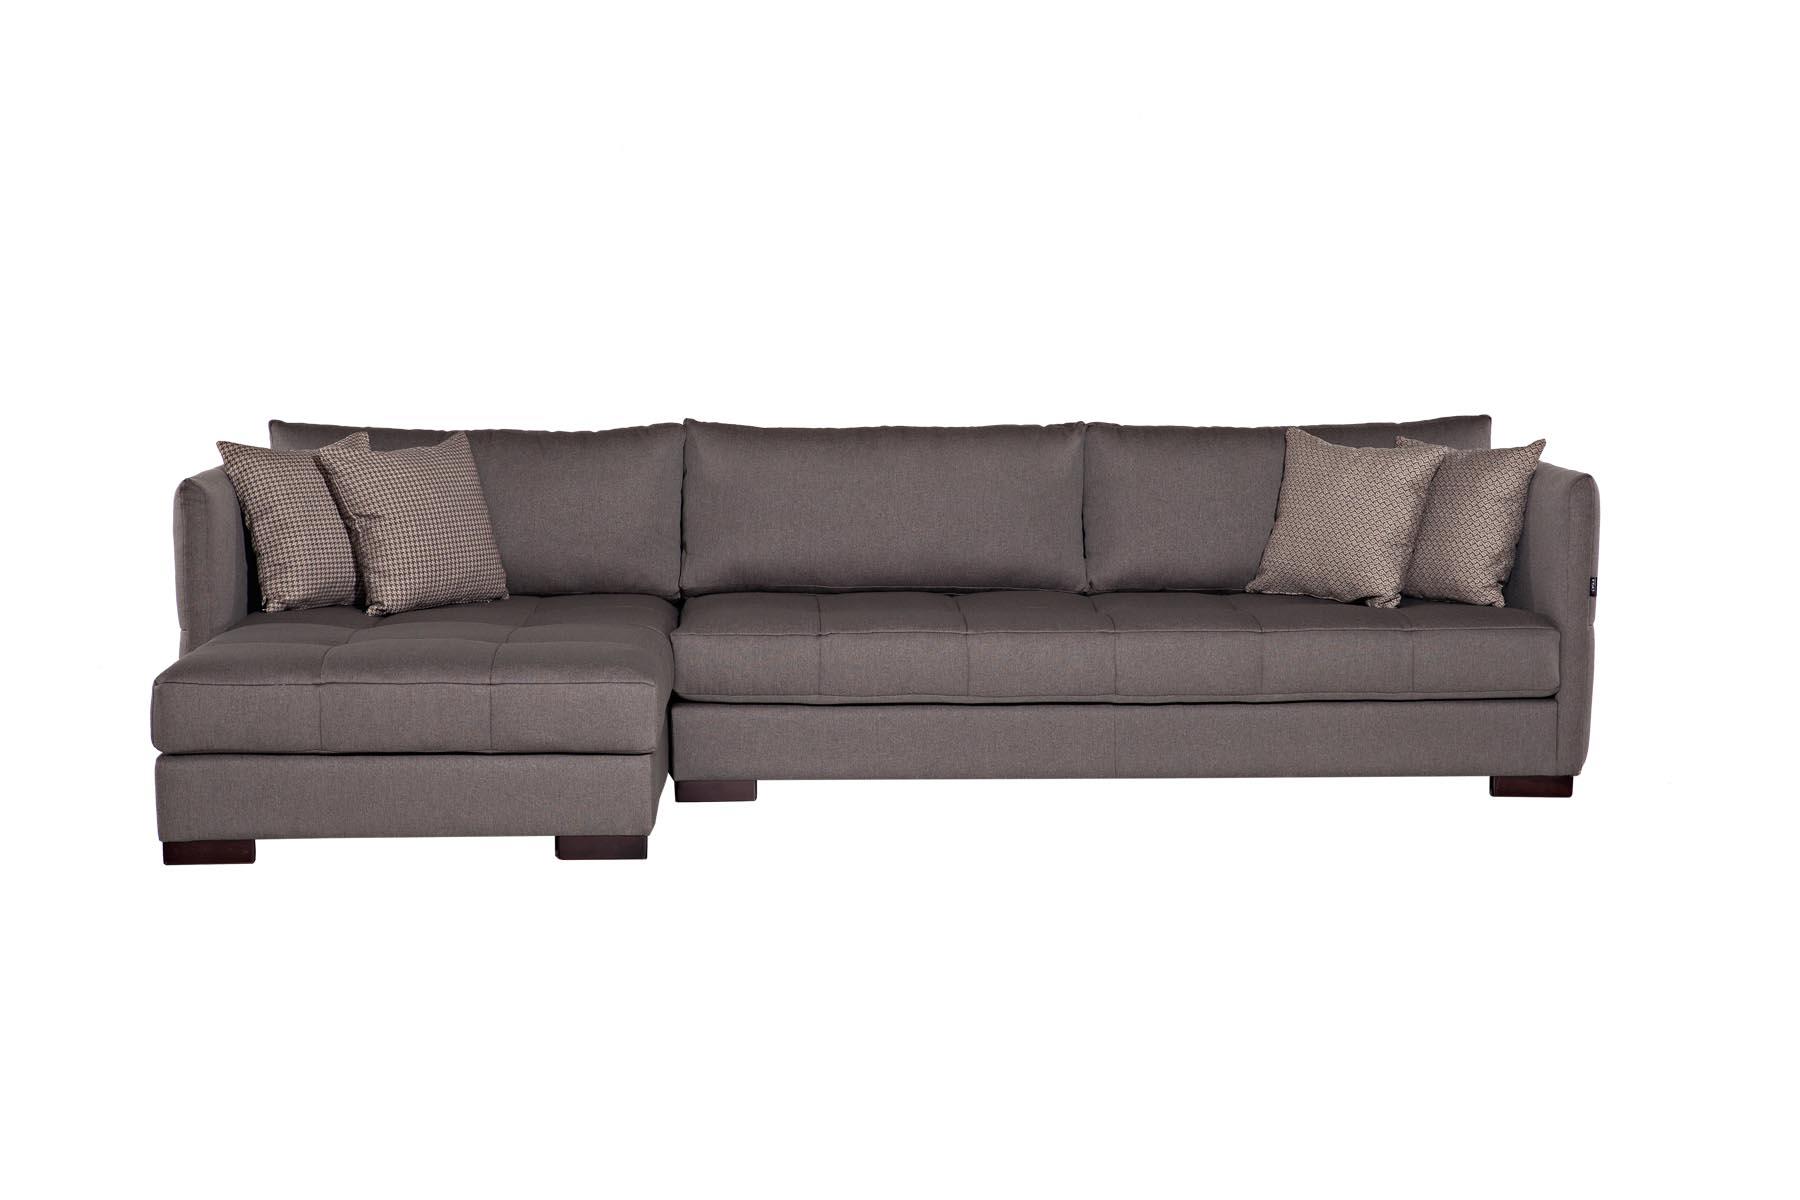 Ugaona sofa koja je jedinstvena zbog svojih tankih stranica i zanimljivih štepova na sjedećem dijelu. Mogućnost izbora boje i različitih modifikacija.